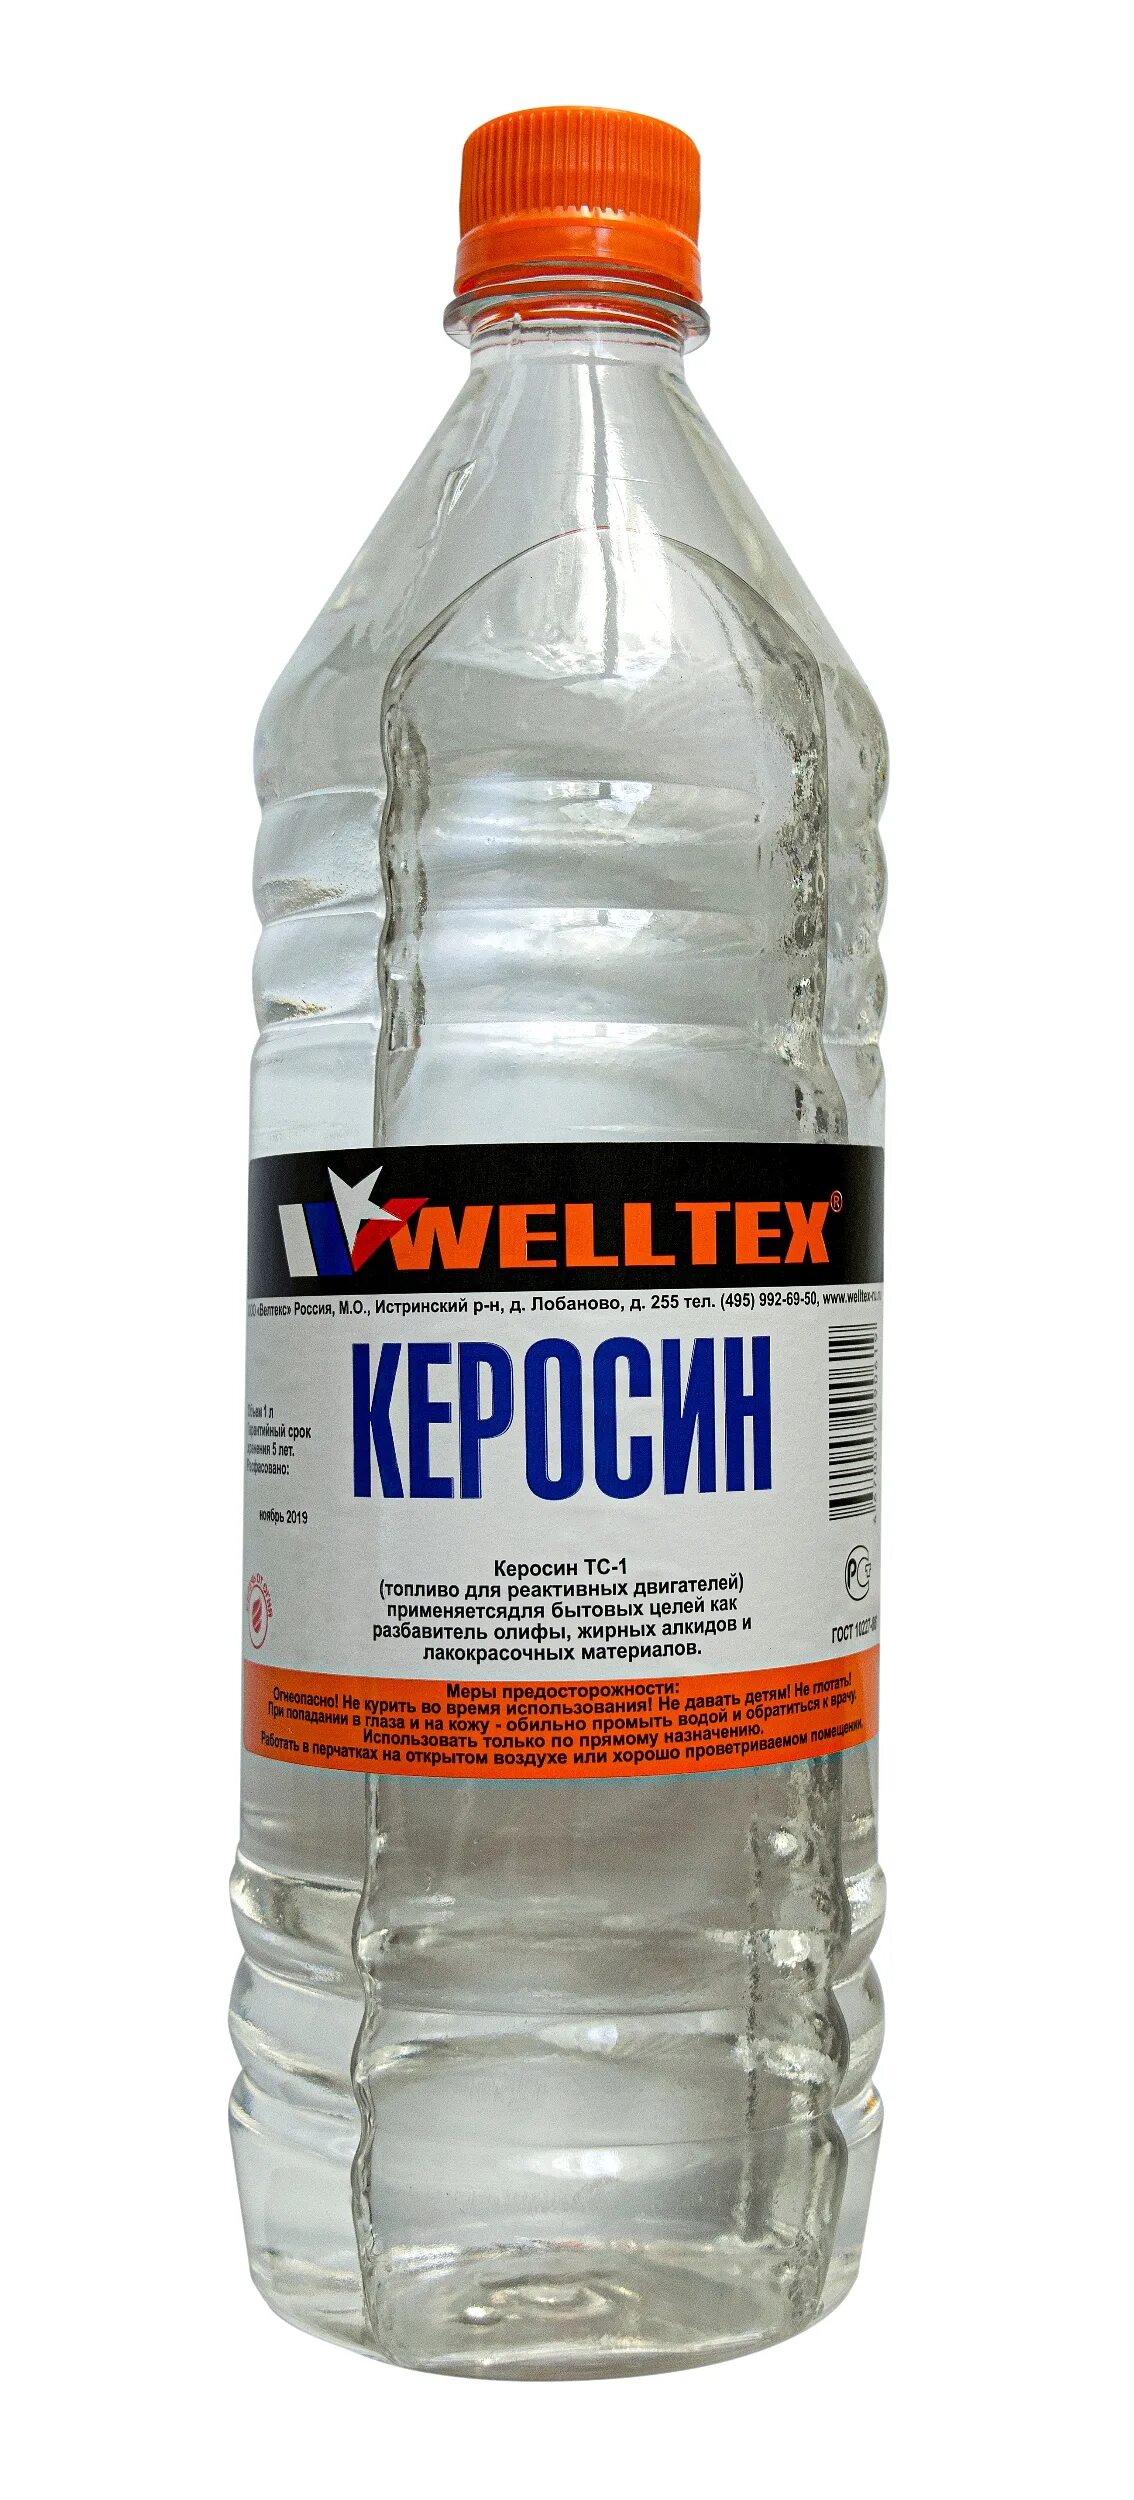 Welltex керосин (1л.). Керосин 1л Welltex Welltex 4670007990619. Сольвент Welltex нефтяной 1 л. Керосин ТС-1 ГОСТ. Очищенный керосин купить